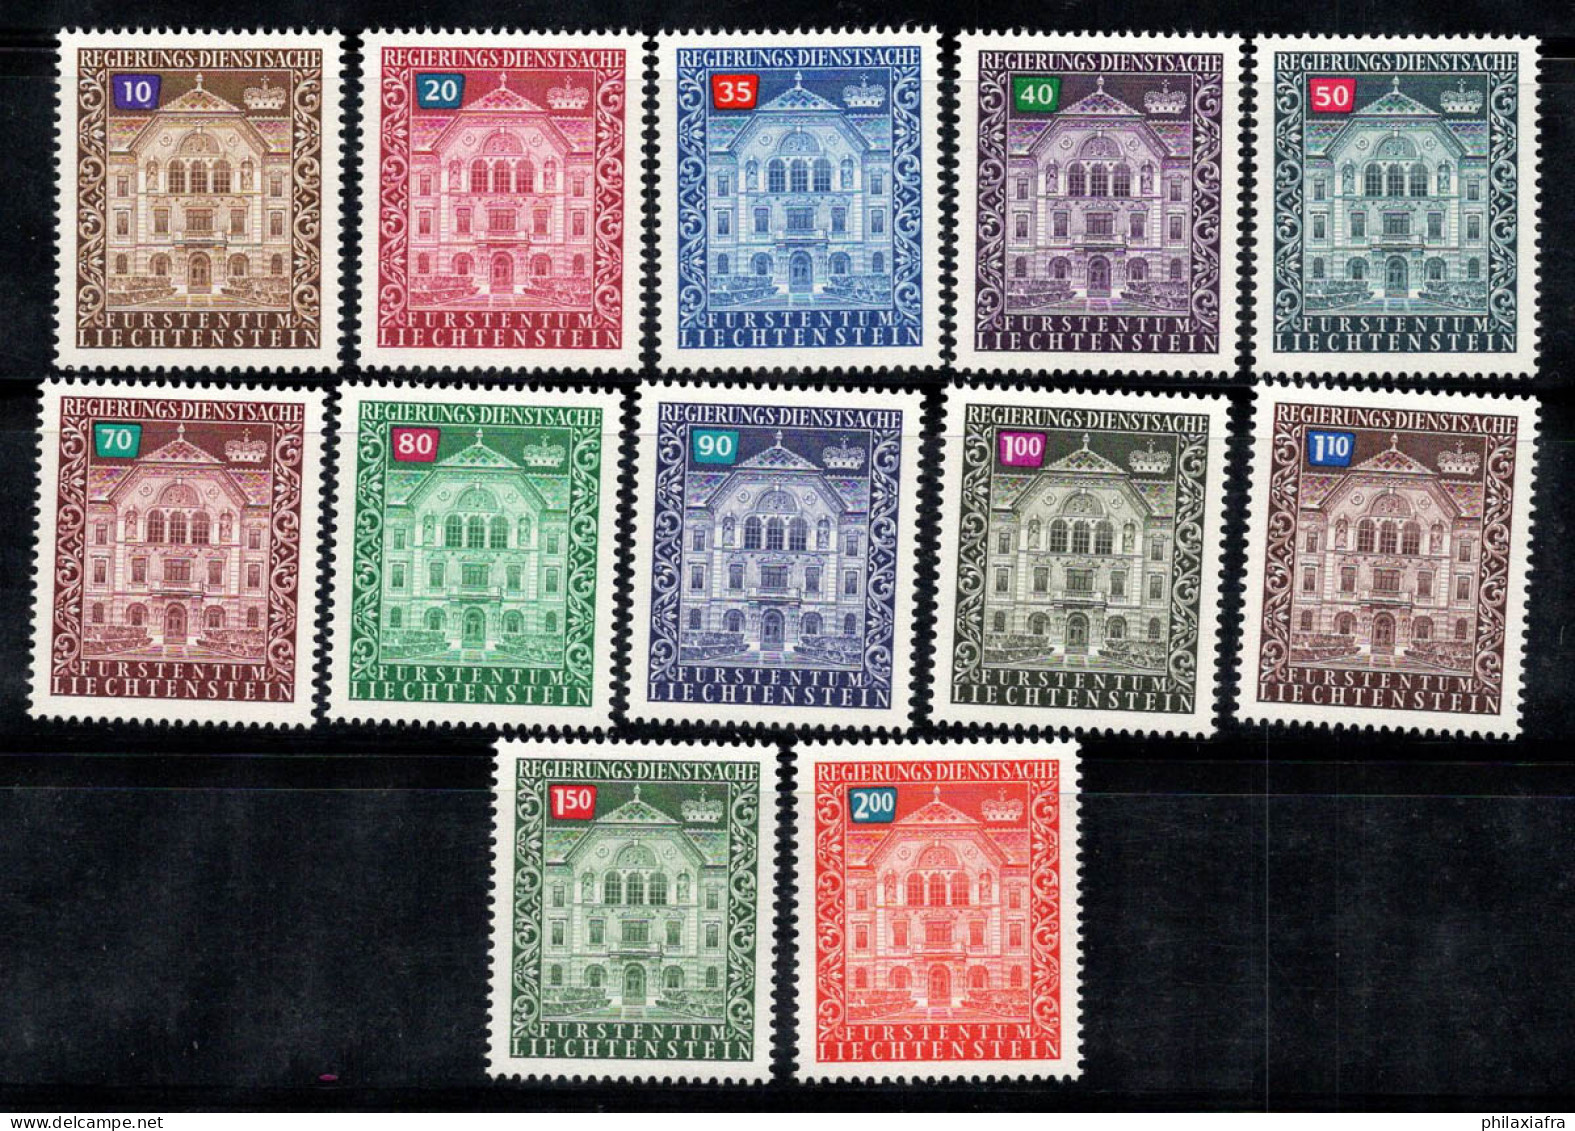 Liechtenstein 1976 Mi. 57-68 Neuf ** 100% Service Édifice Gouvernemental - Dienstzegels